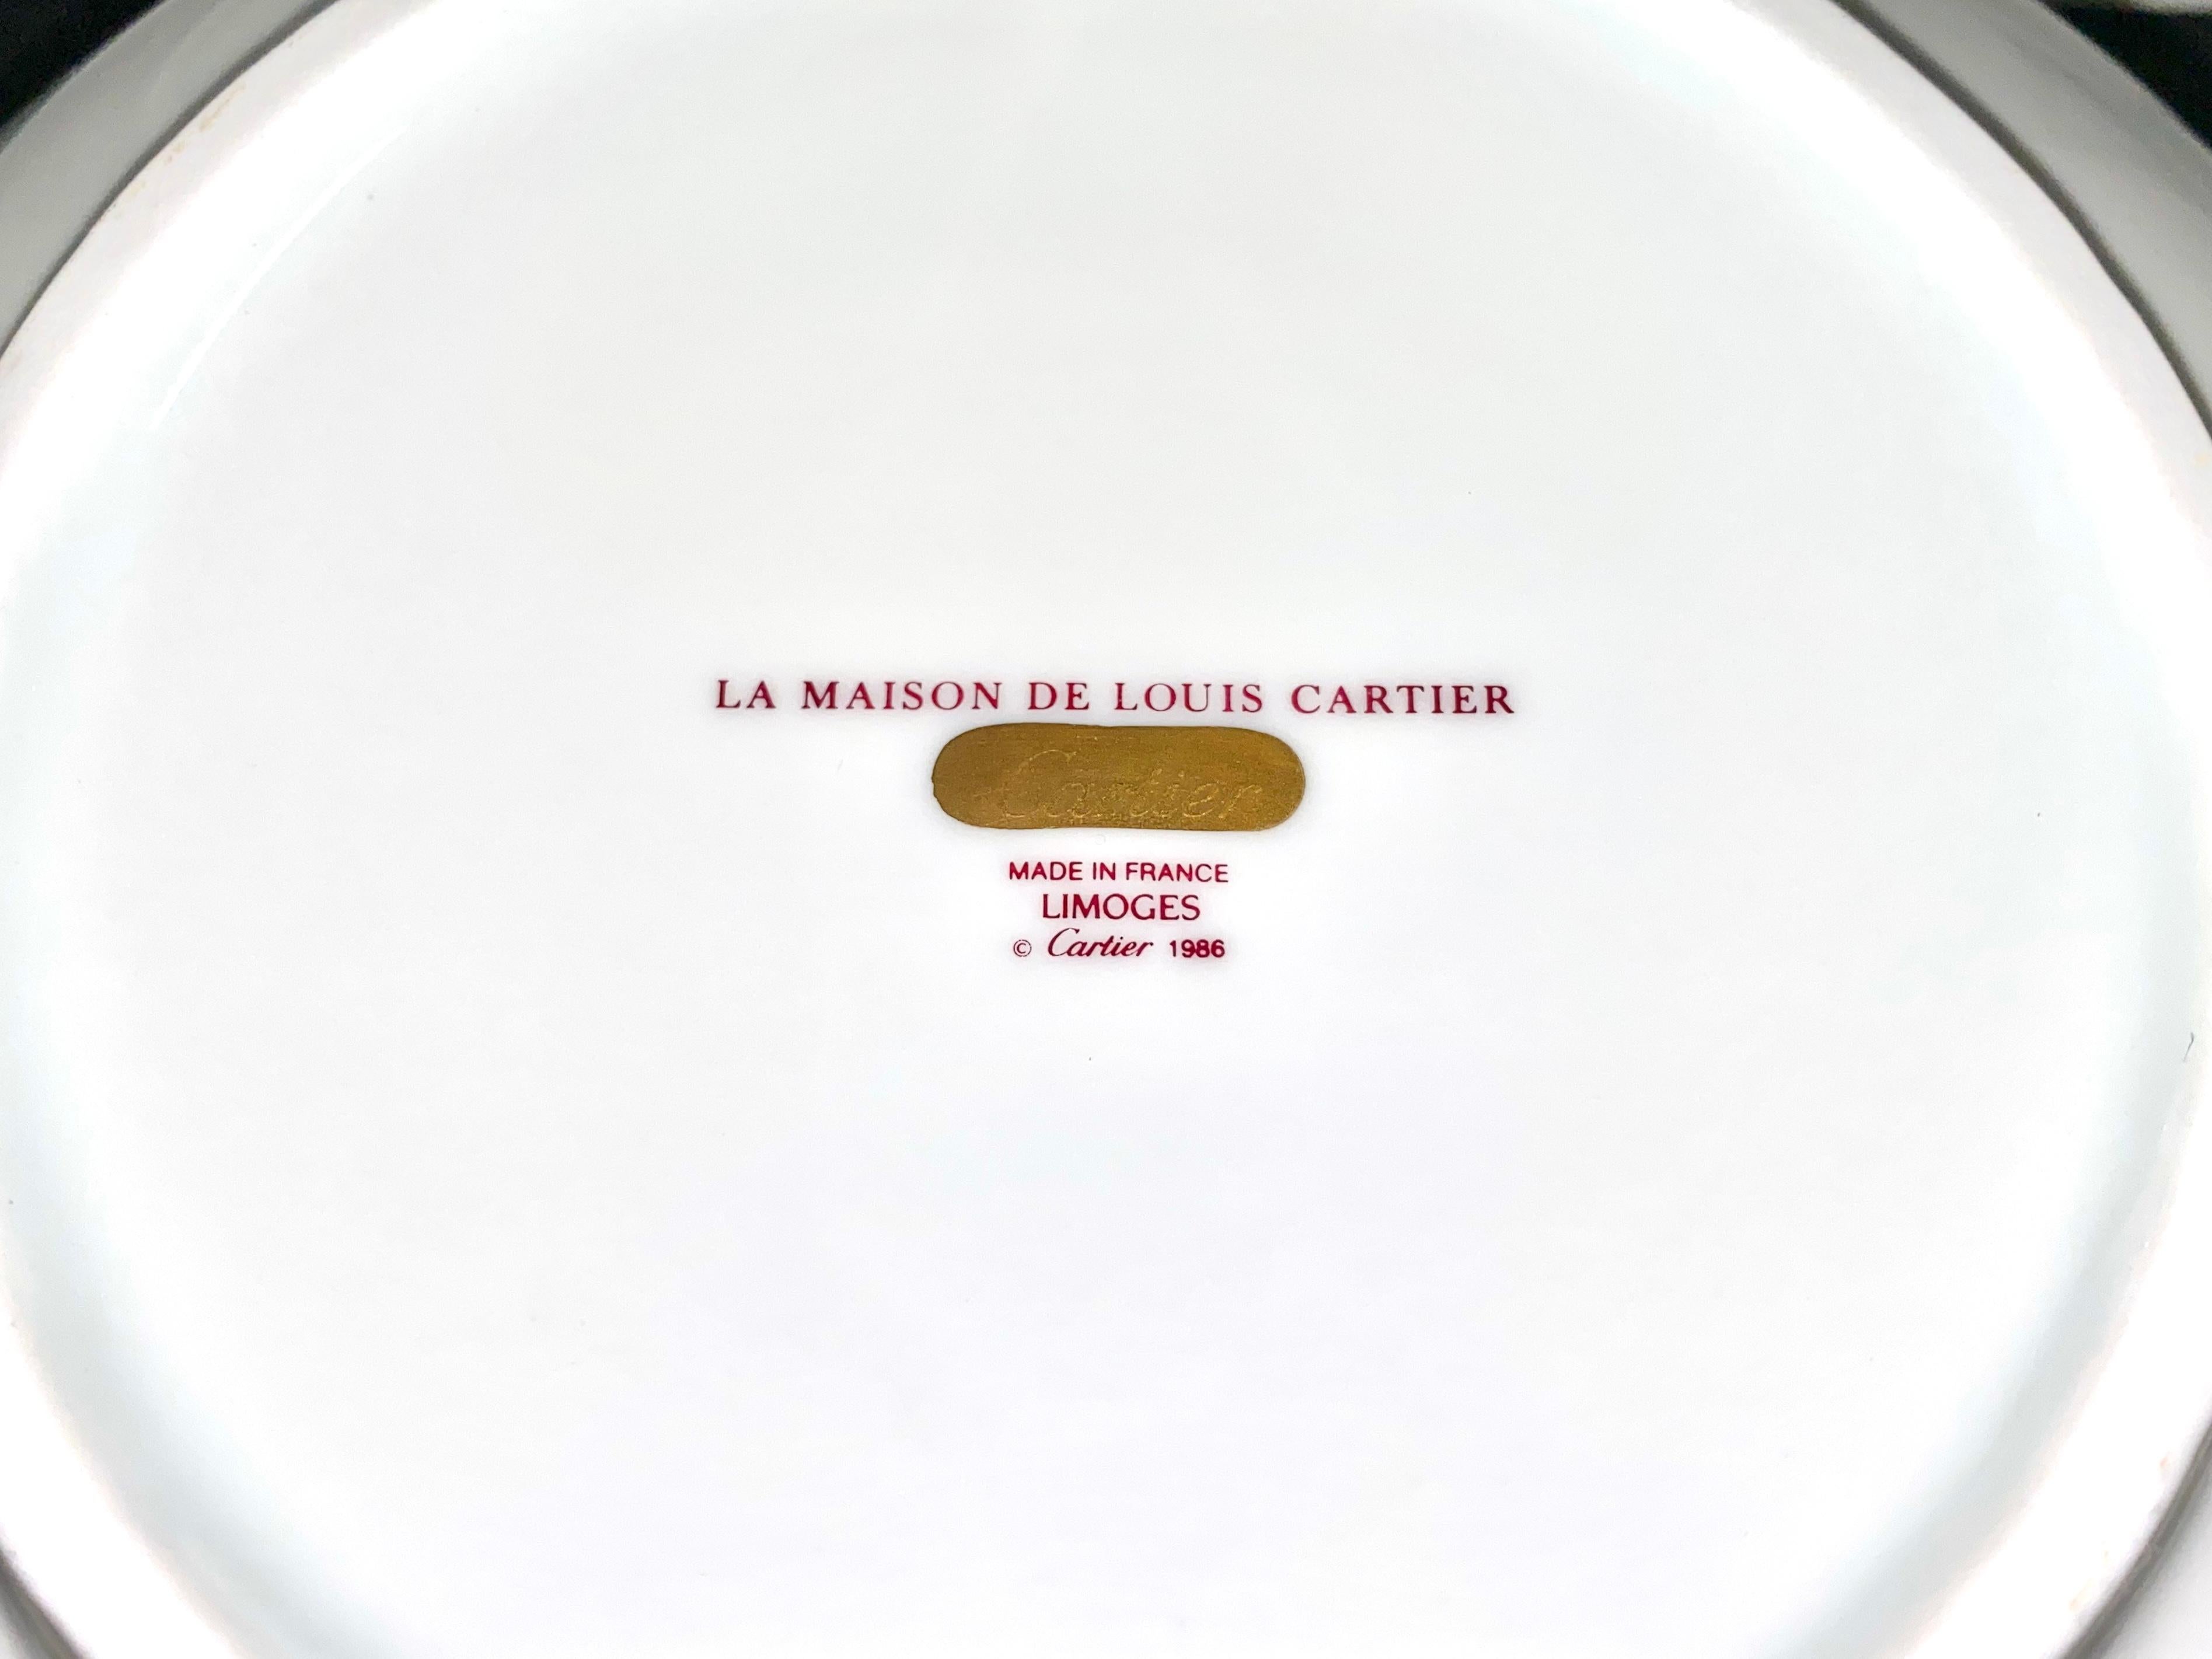 Porcelain Dinnerware, Tableware by Limoges and La Maison de Louis Cartier 6